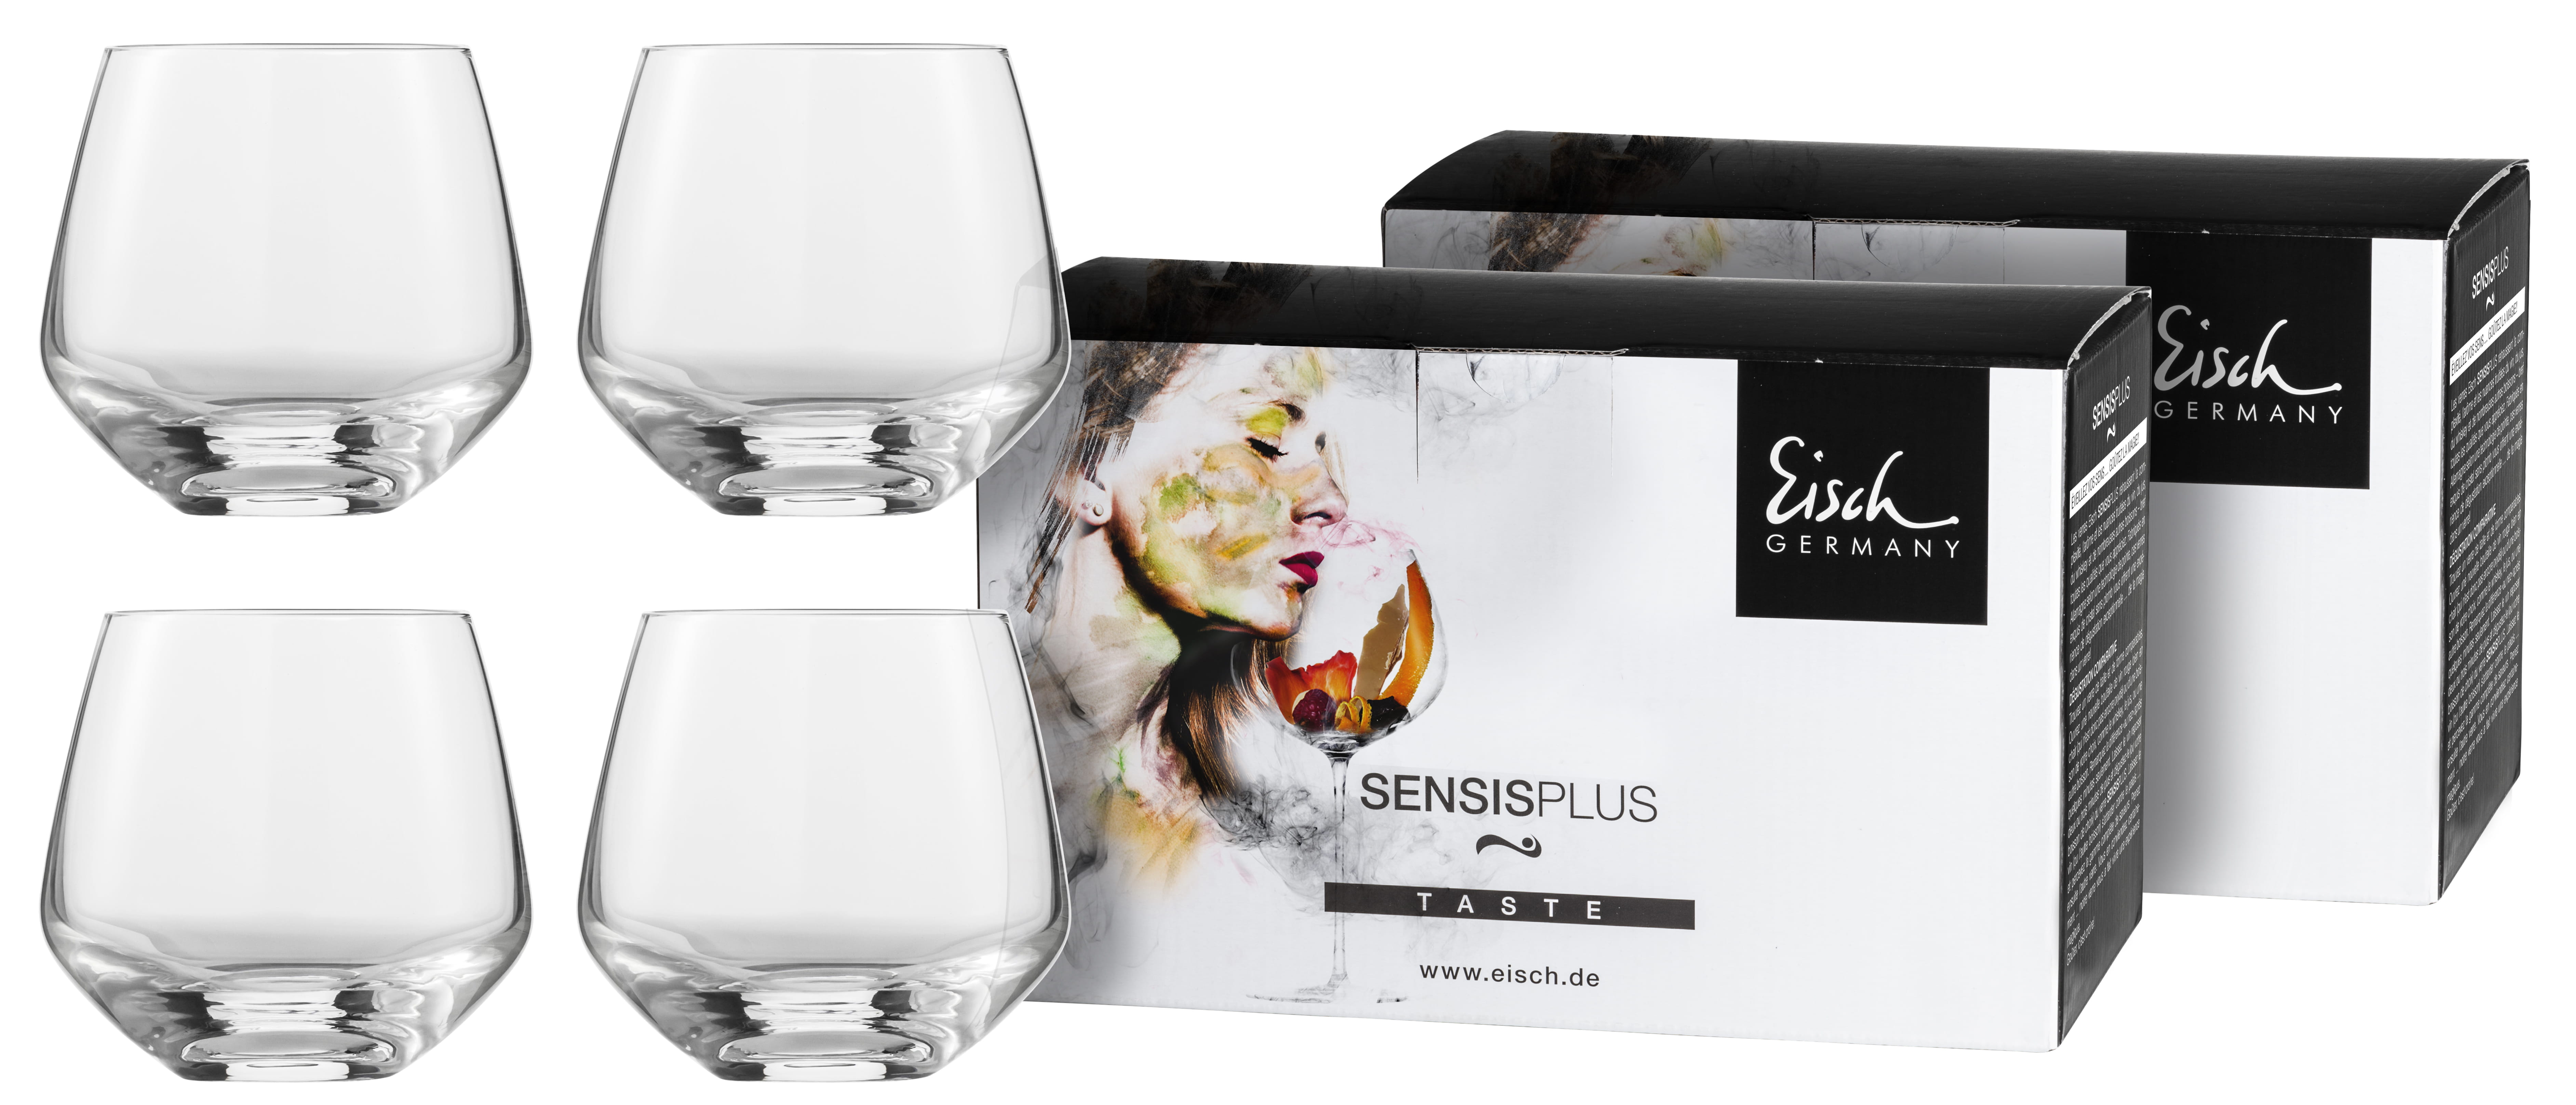 Eisch Sky Sensis plus Whiskyglas 518/14 - 4 Stück im Geschenkkarton